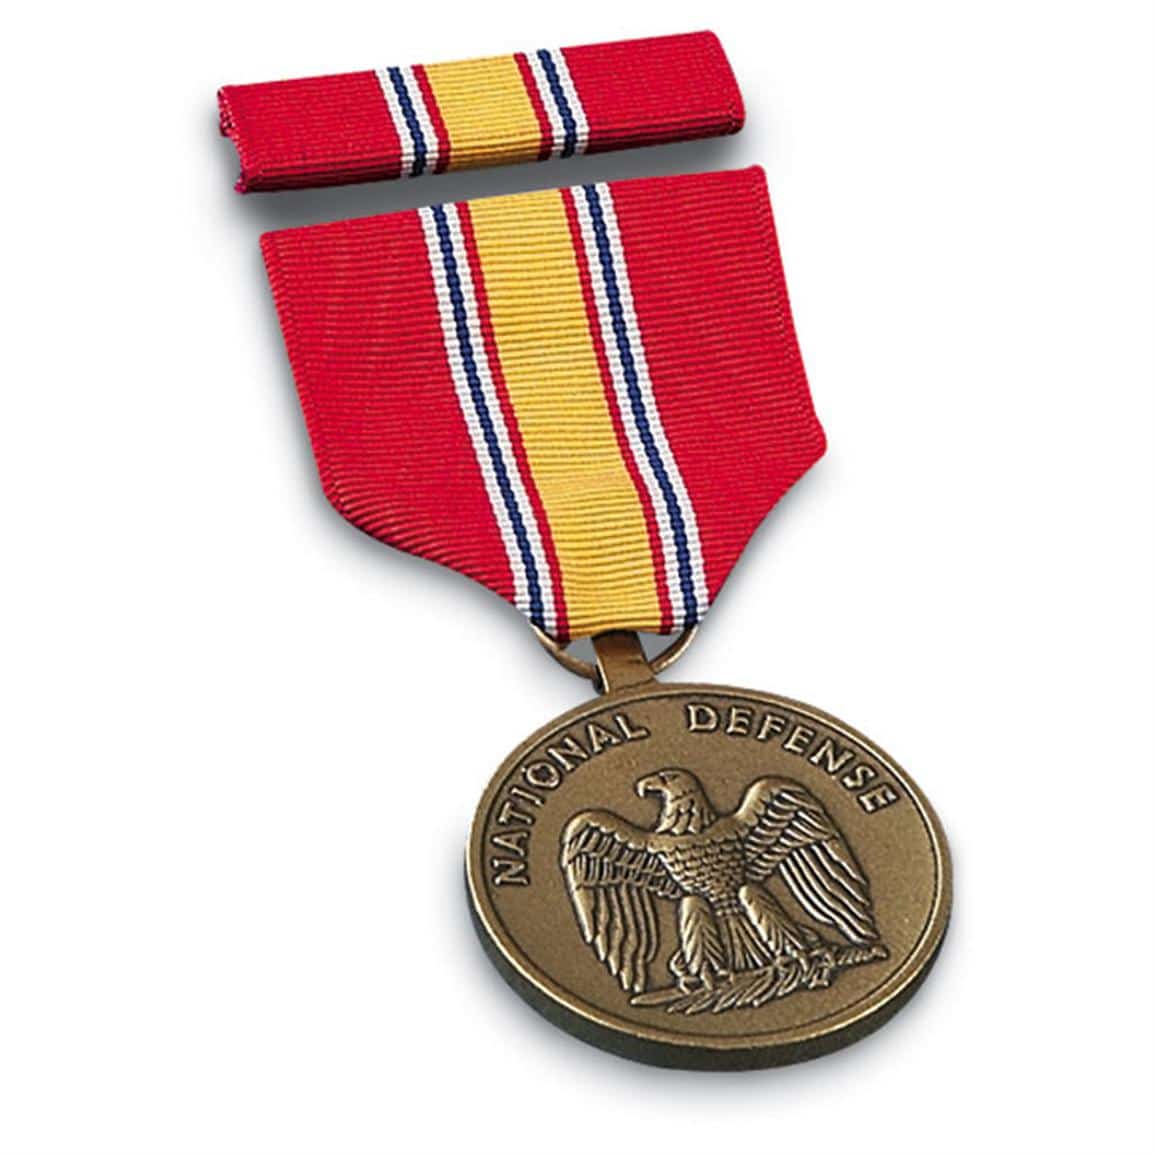 New U.S. Mil. National Defense Service Medal